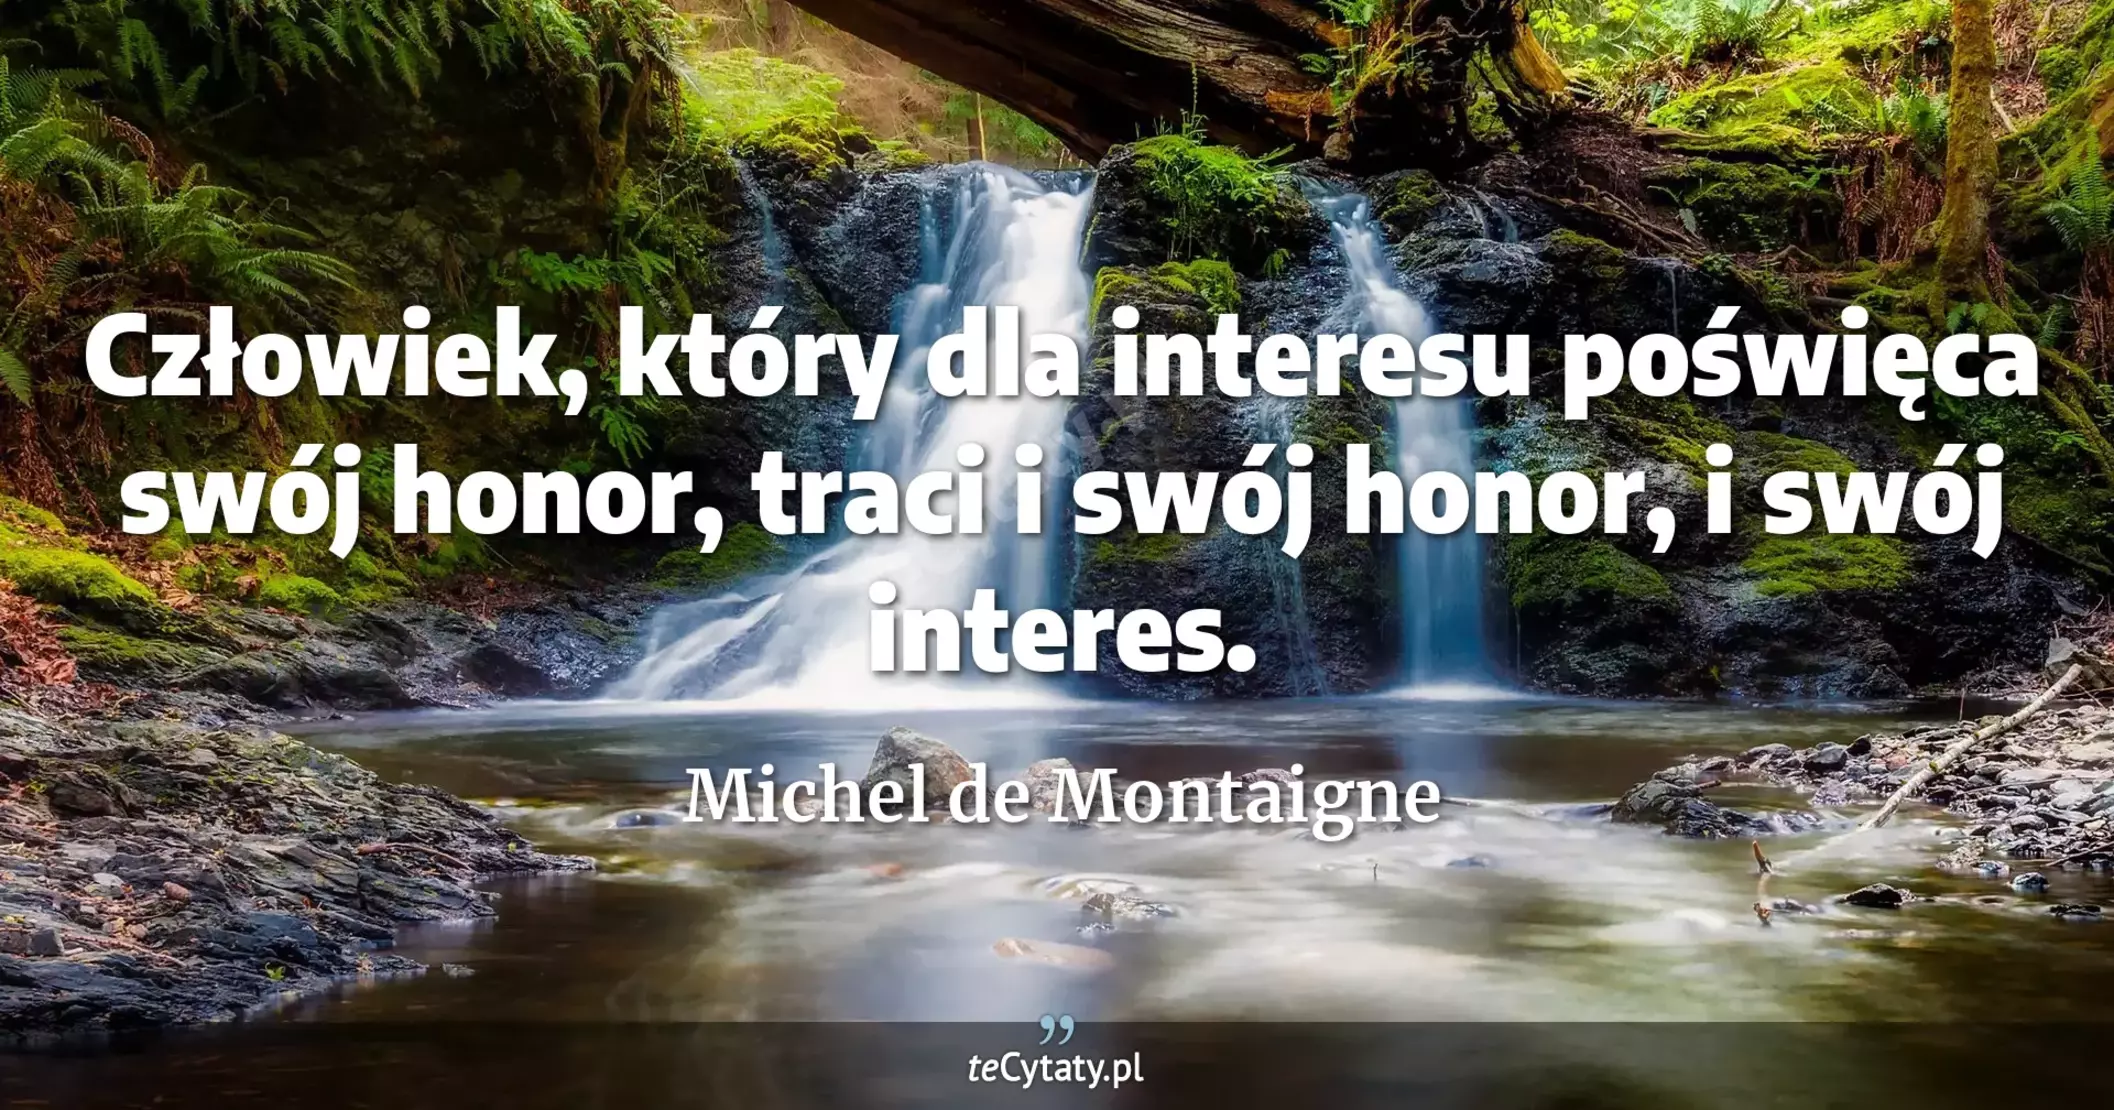 Człowiek, który dla interesu poświęca swój honor, traci i swój honor, i swój interes. - Michel de Montaigne